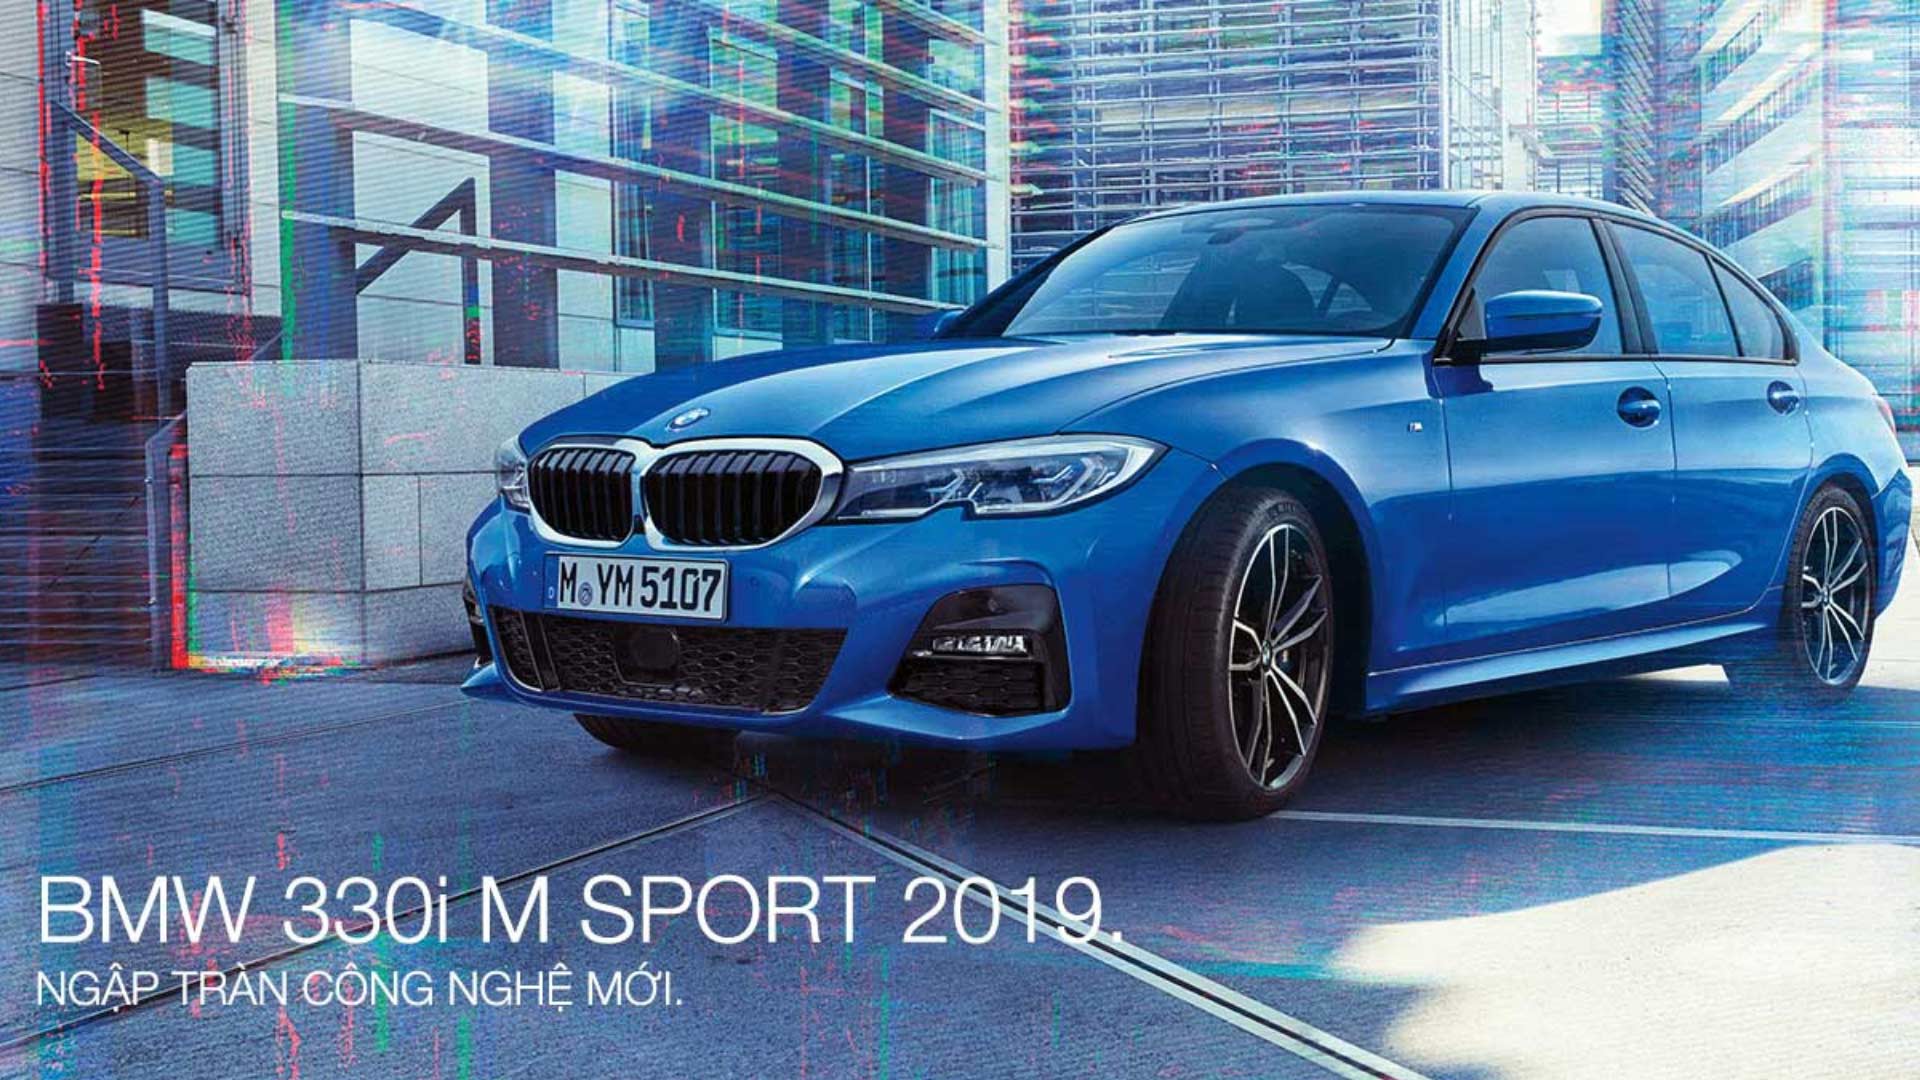 BMW 330i SportLine về Việt Nam rẻ hơn 200 triệu đồng